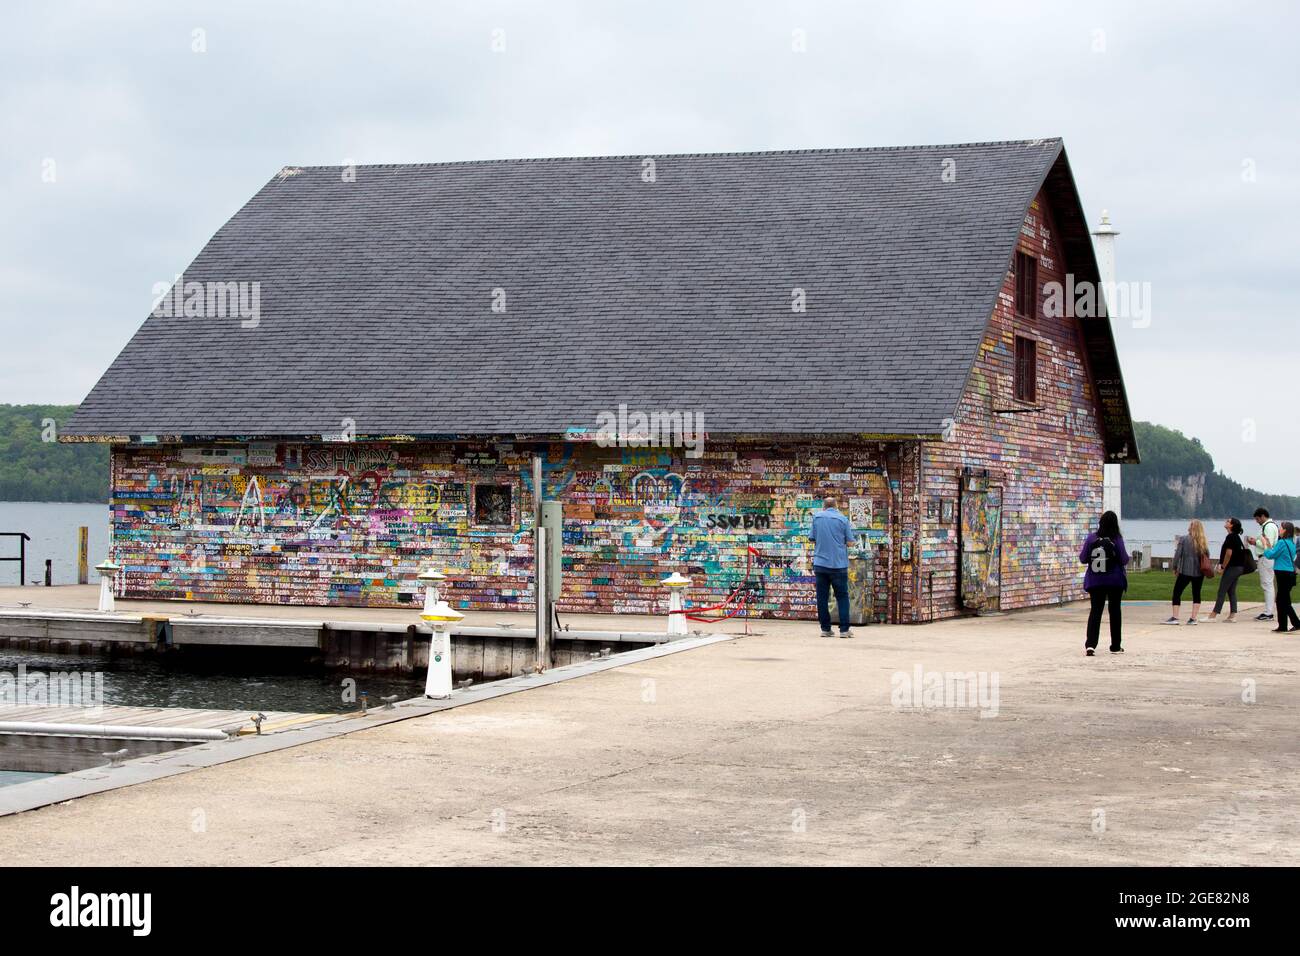 Die mit Graffiti bedeckte Scheune der Hardy Gallery am Anderson Dock in Ephraim, Door County, Wisconsin. Stockfoto